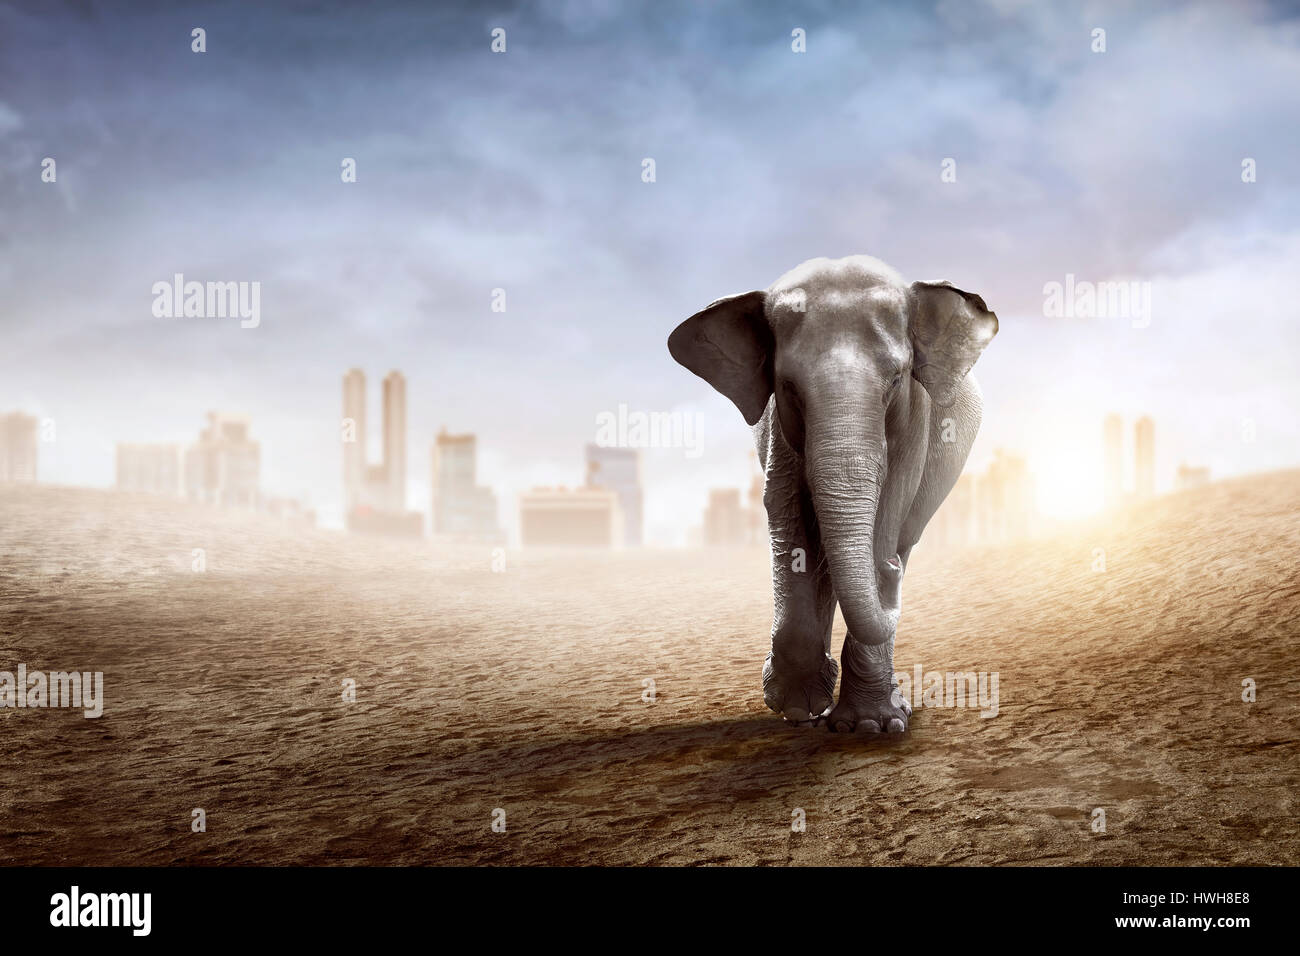 Sumatran elephant walk on the desert with city background Stock Photo